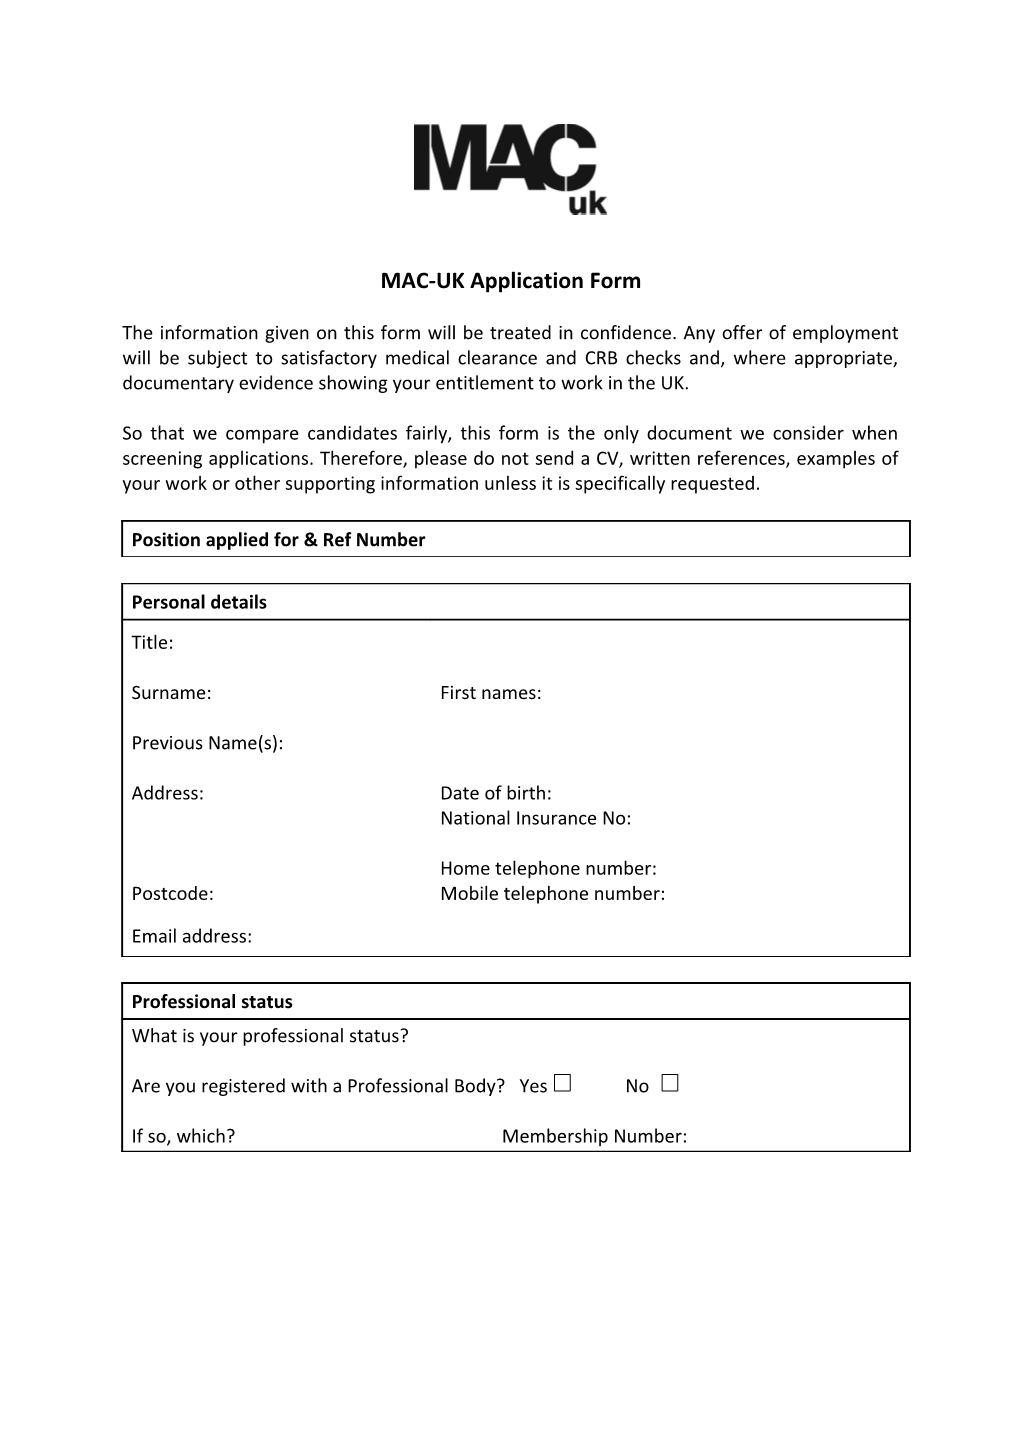 MAC-UK Application Form